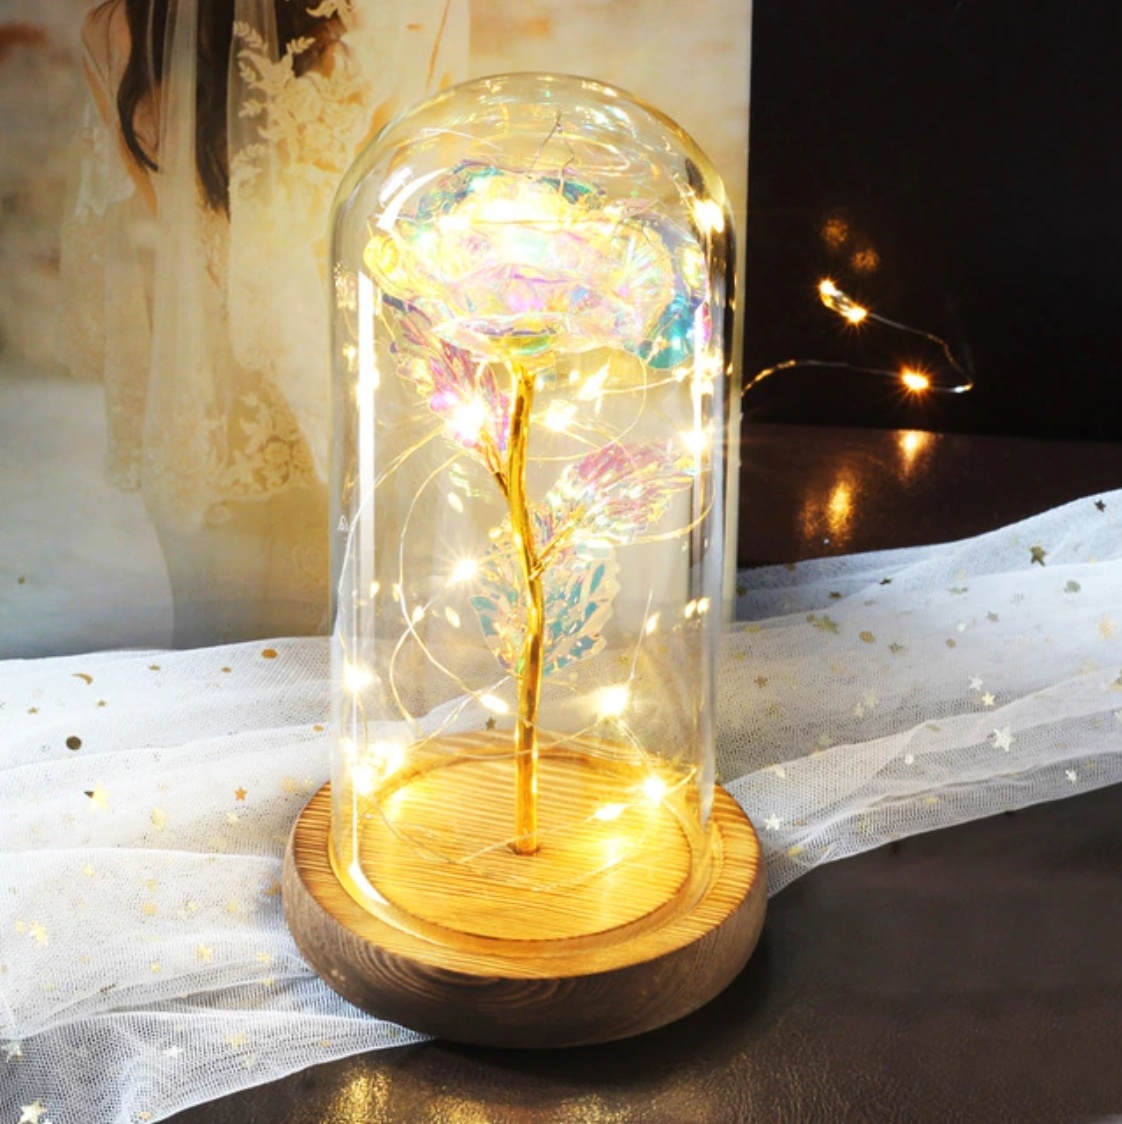 Stuff Certified® Art Rose en campana de vidrio con iluminación - Flores de rosas de seda Adorno de decoración de vidrio de lujo